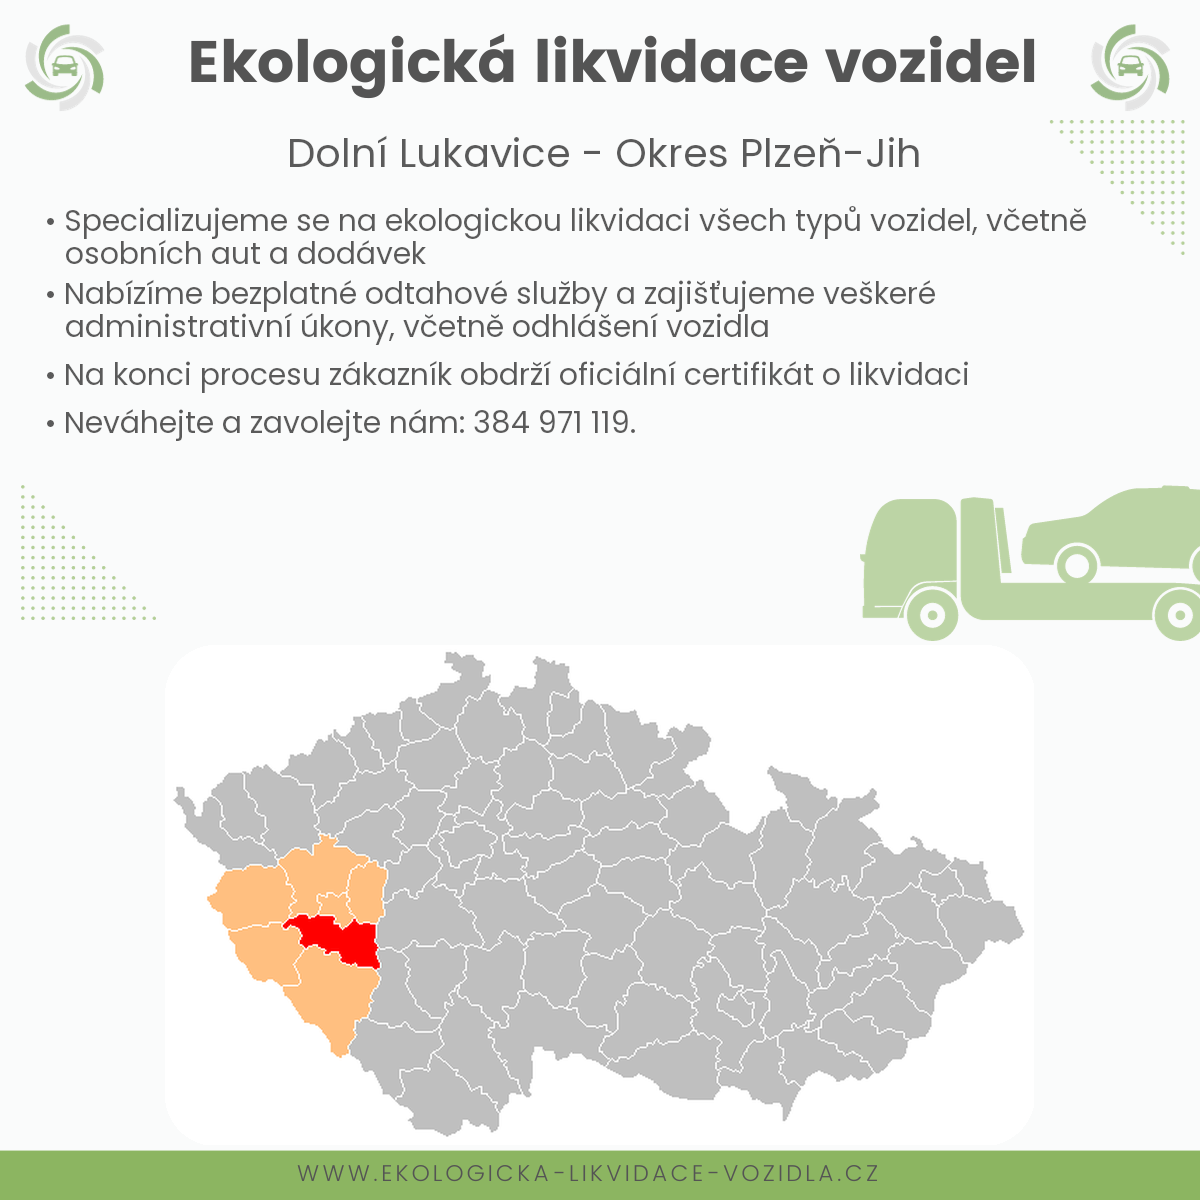 likvidace vozidel - Dolní Lukavice